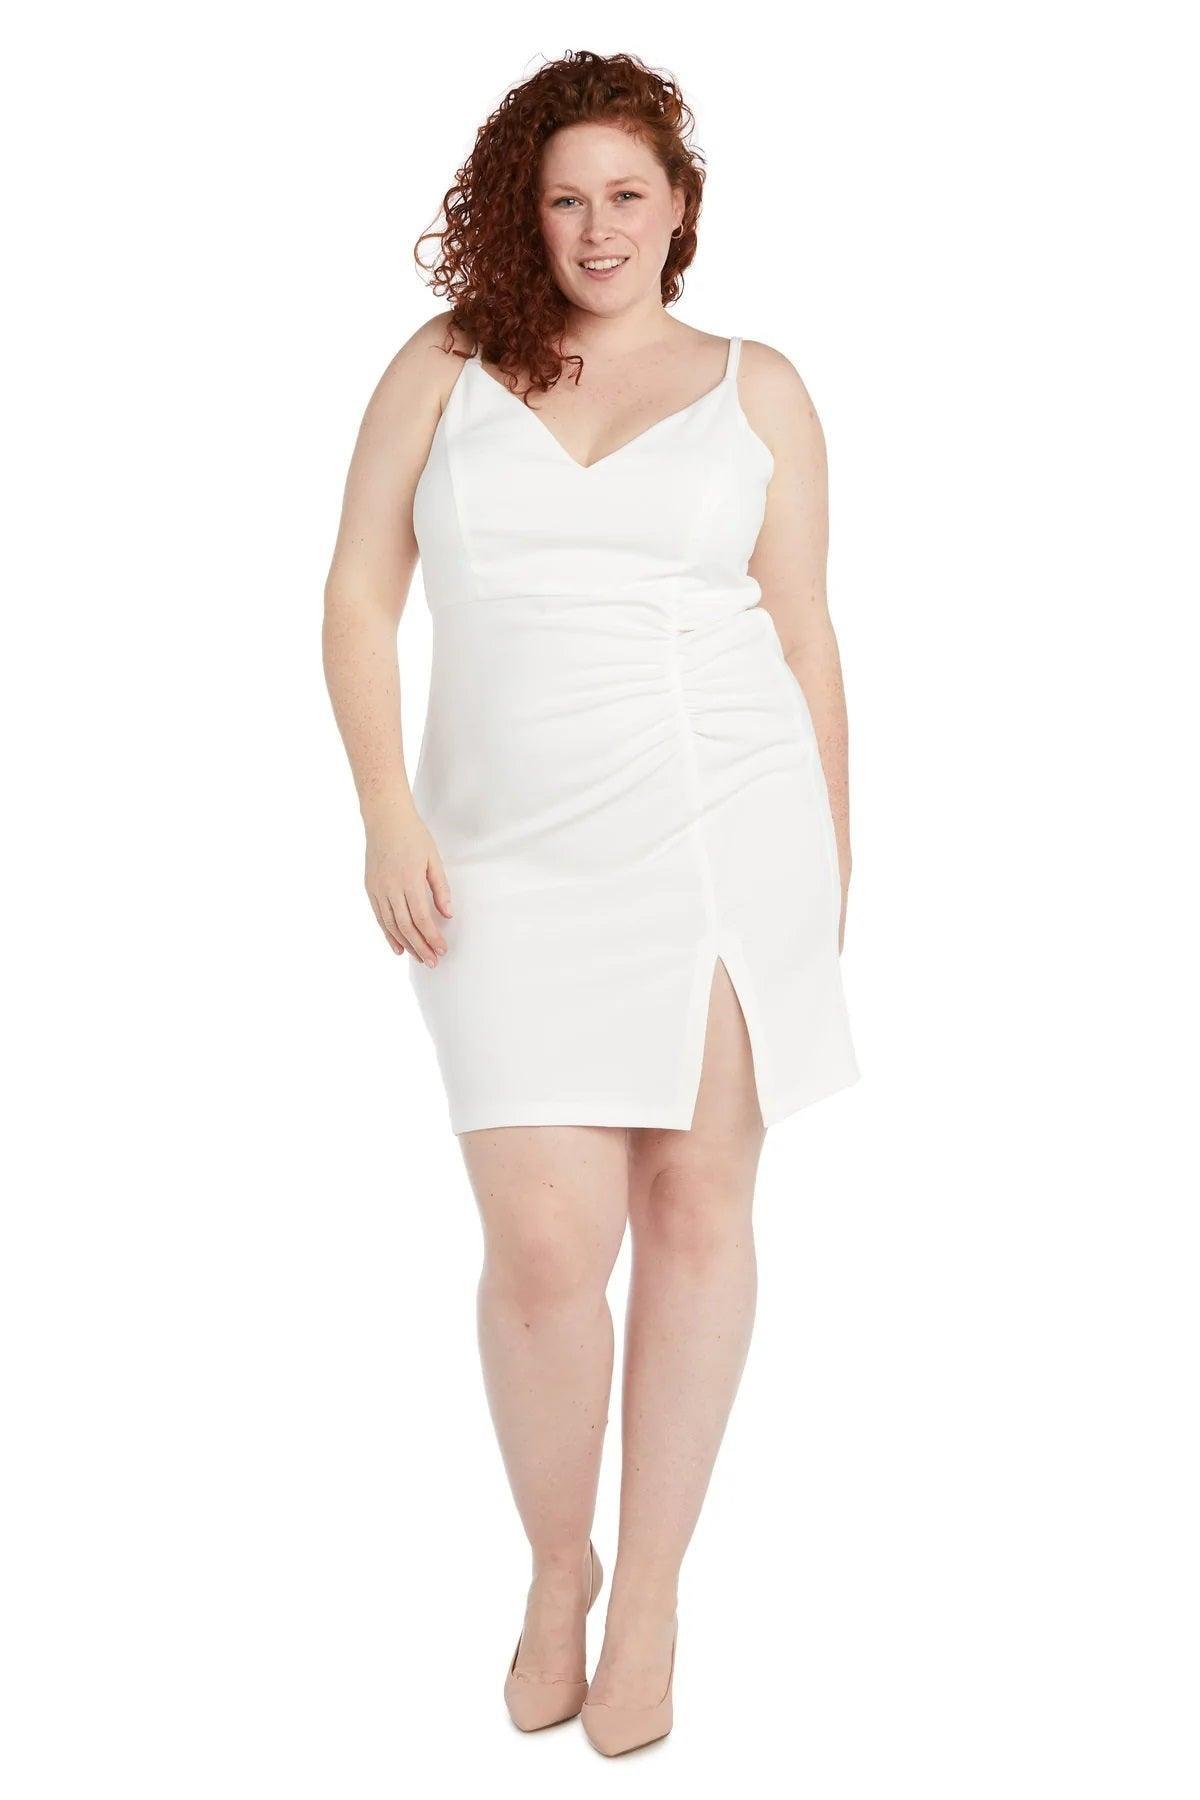 Morgan & Co Short Plus Size Cocktail Dress 13045WM - The Dress Outlet